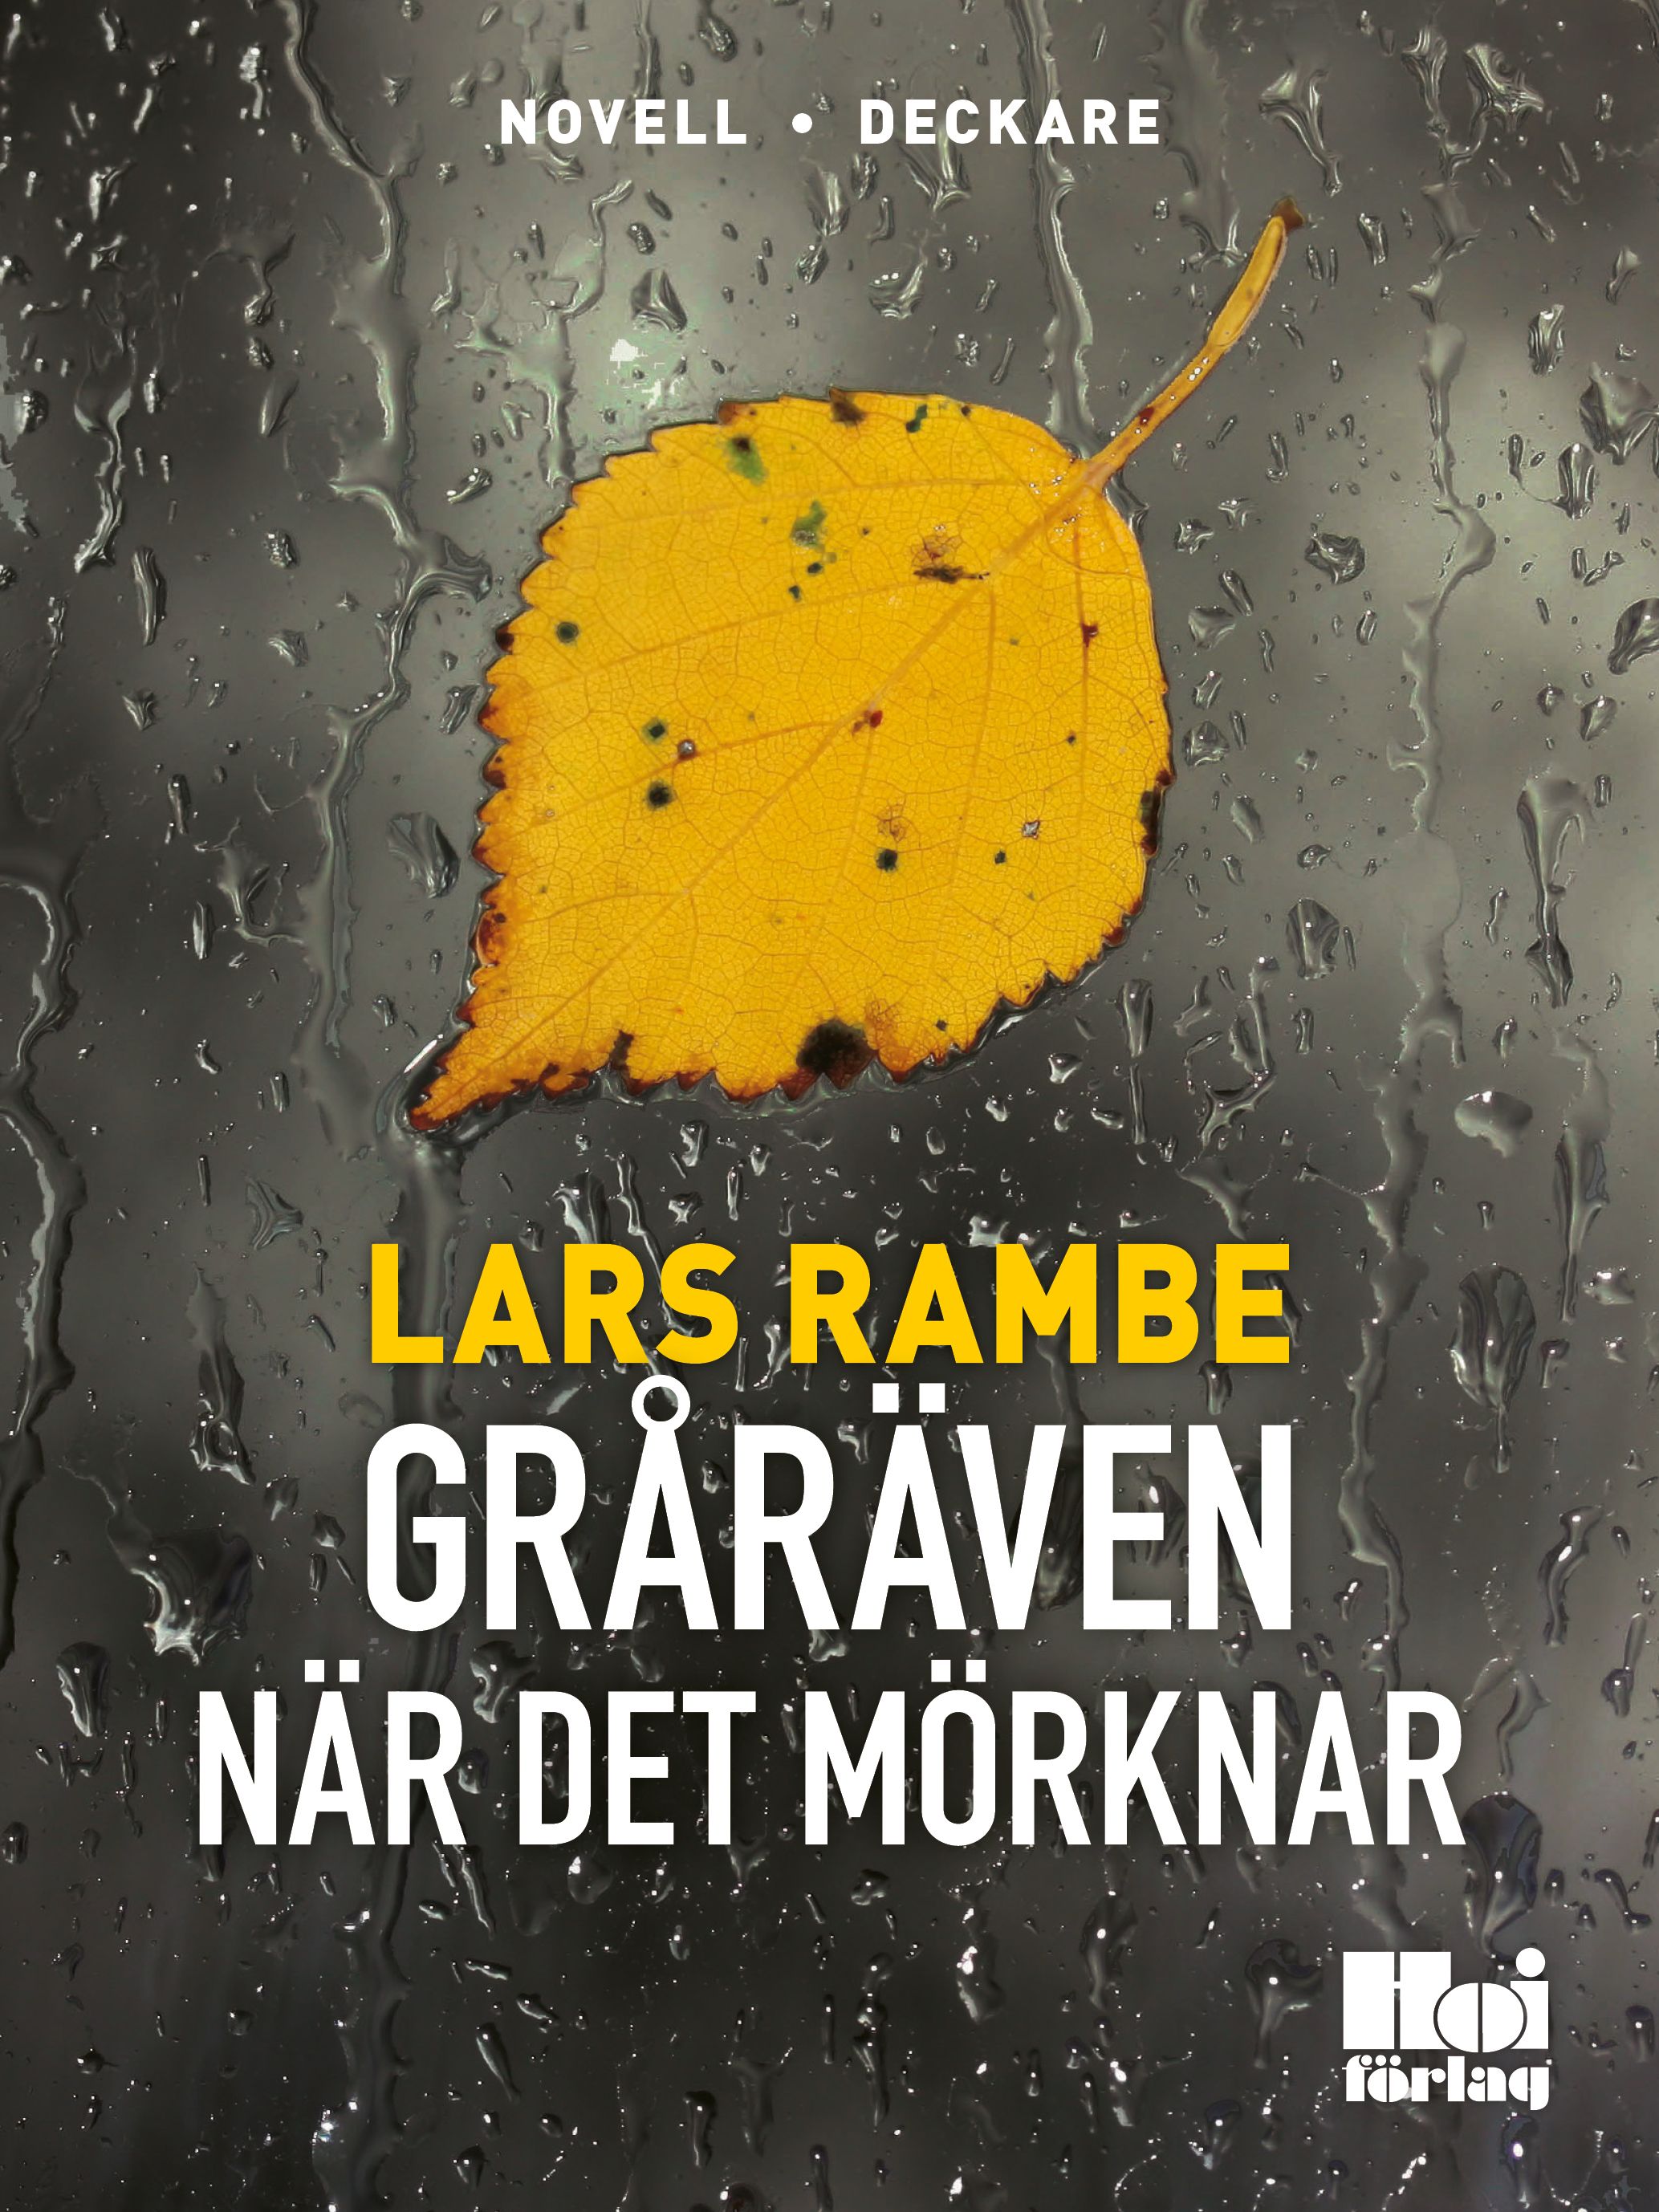 Gråräven - När det mörknar, e-bok av Lars Rambe